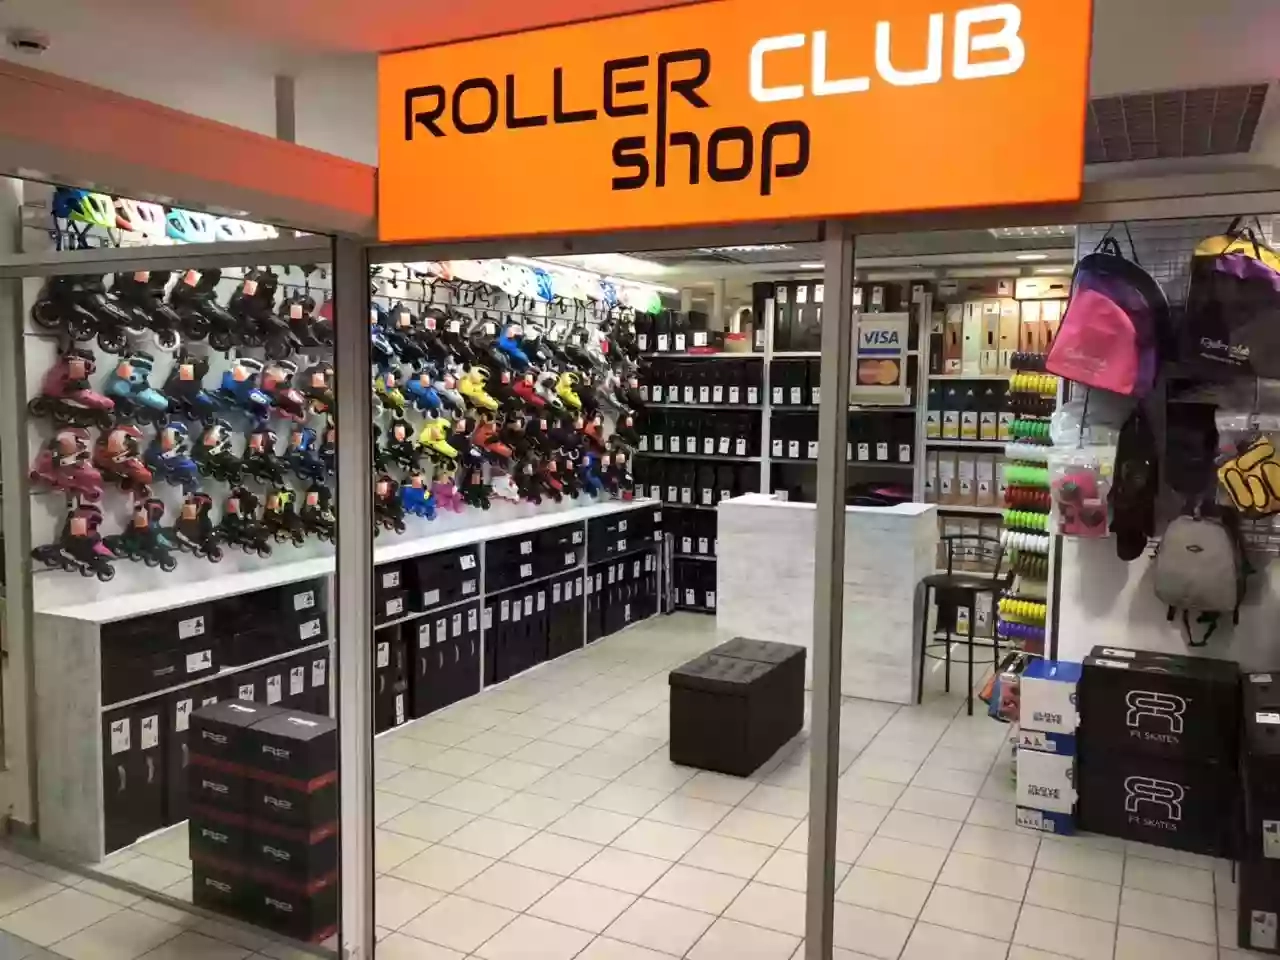 RollerClub shop